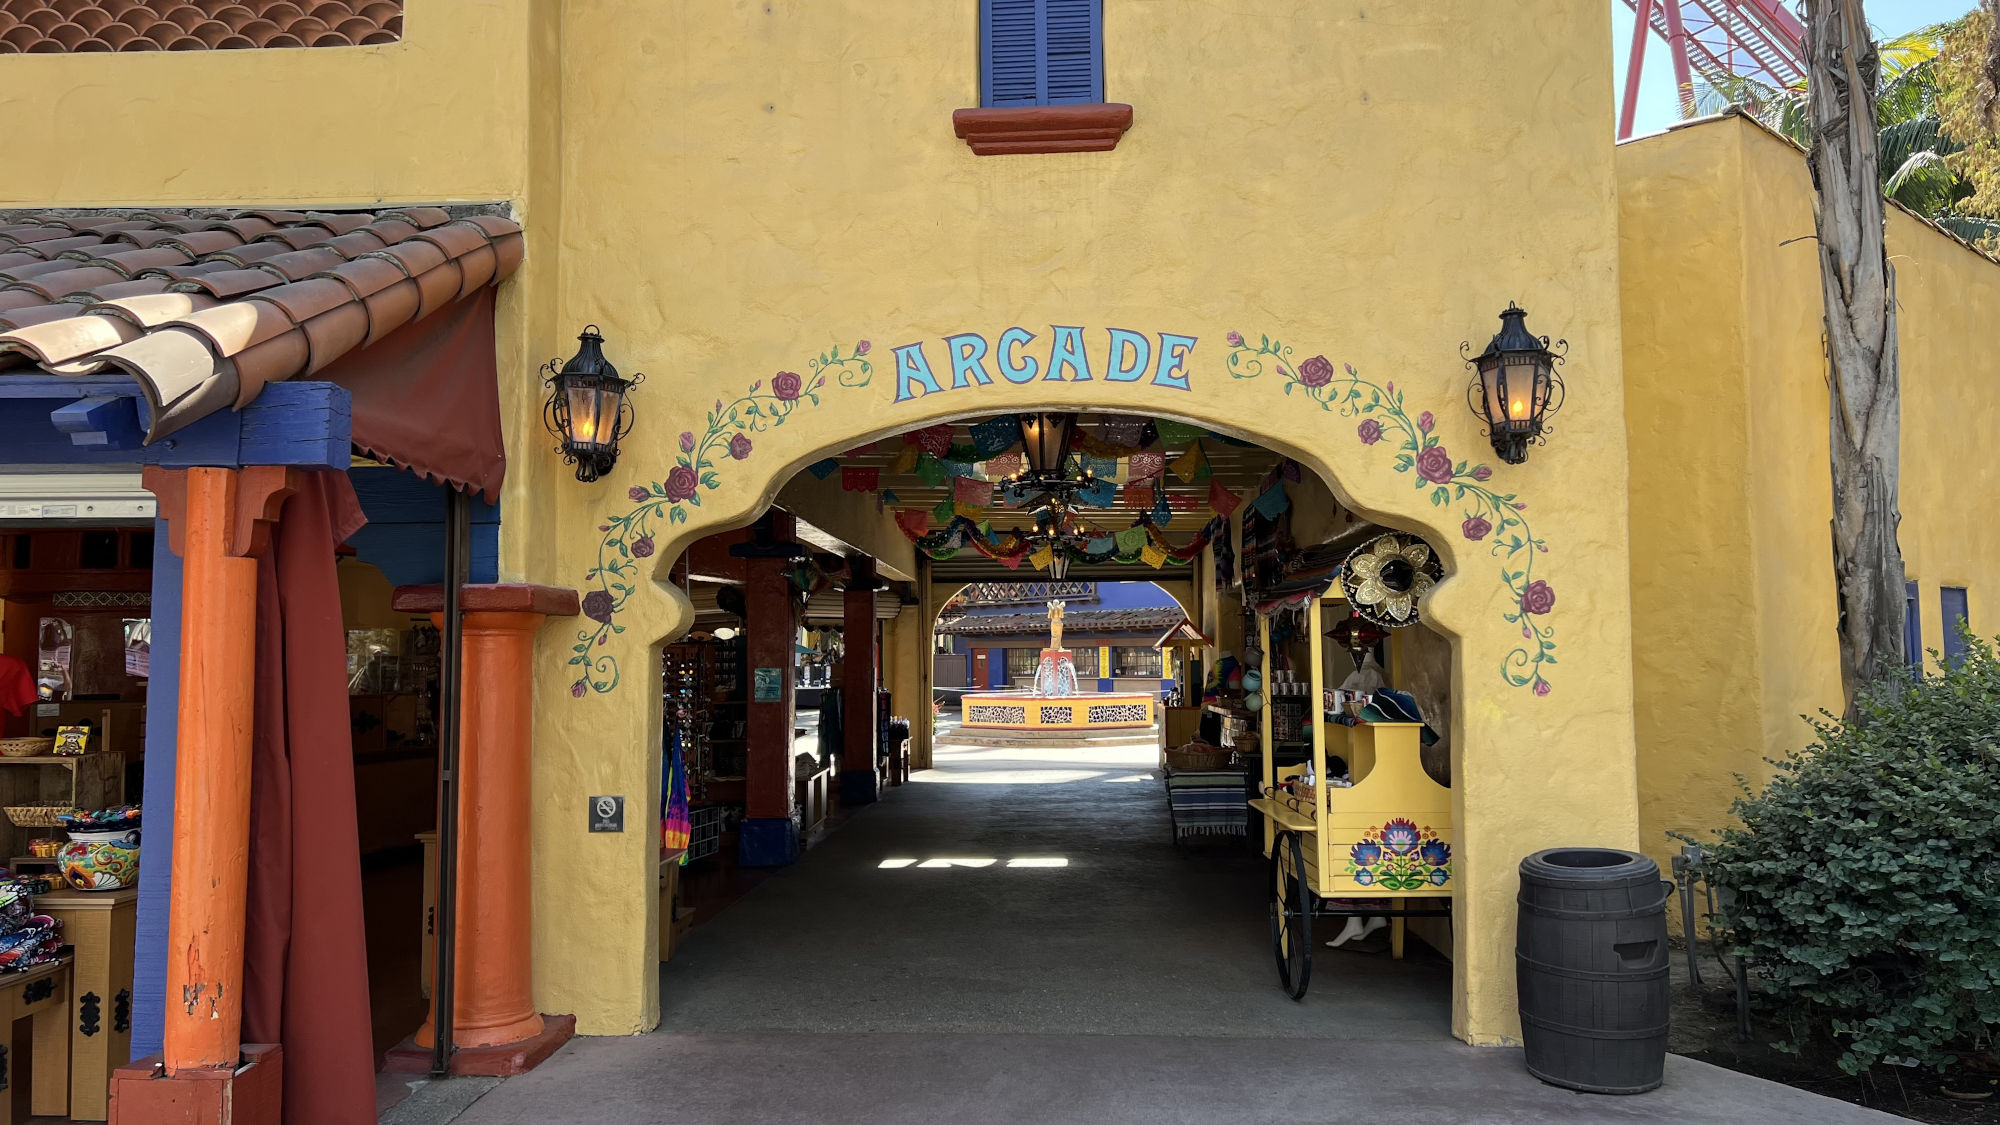 Fiesta Village Arcade